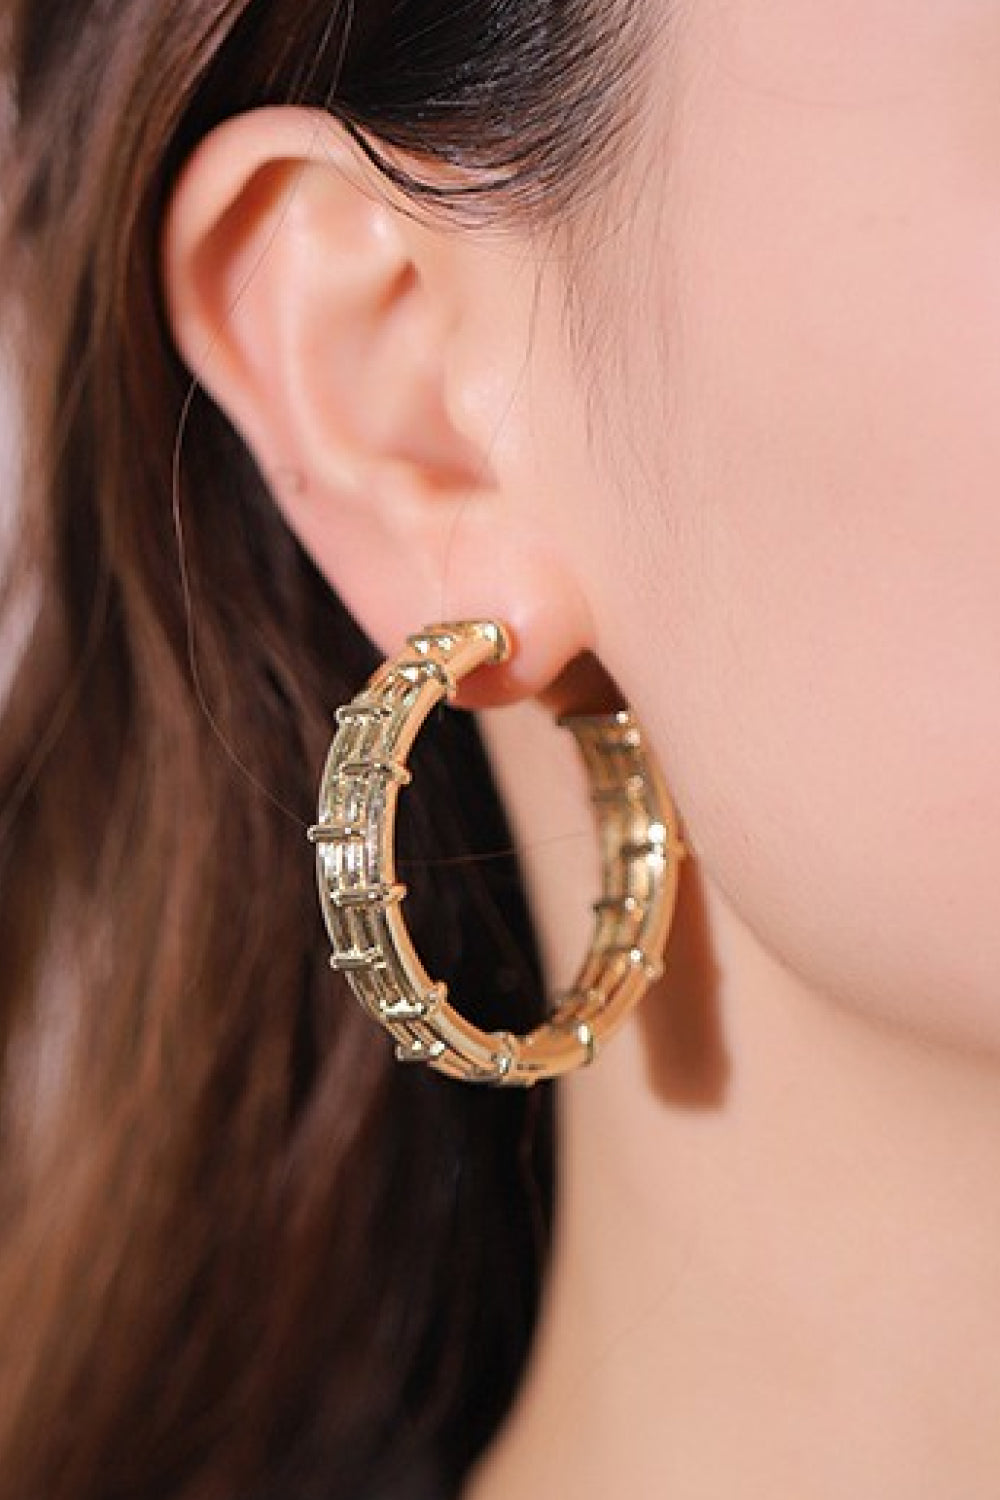 18K Gold-Plated Alloy C-Hoop Earrings - Earrings - FITGGINS